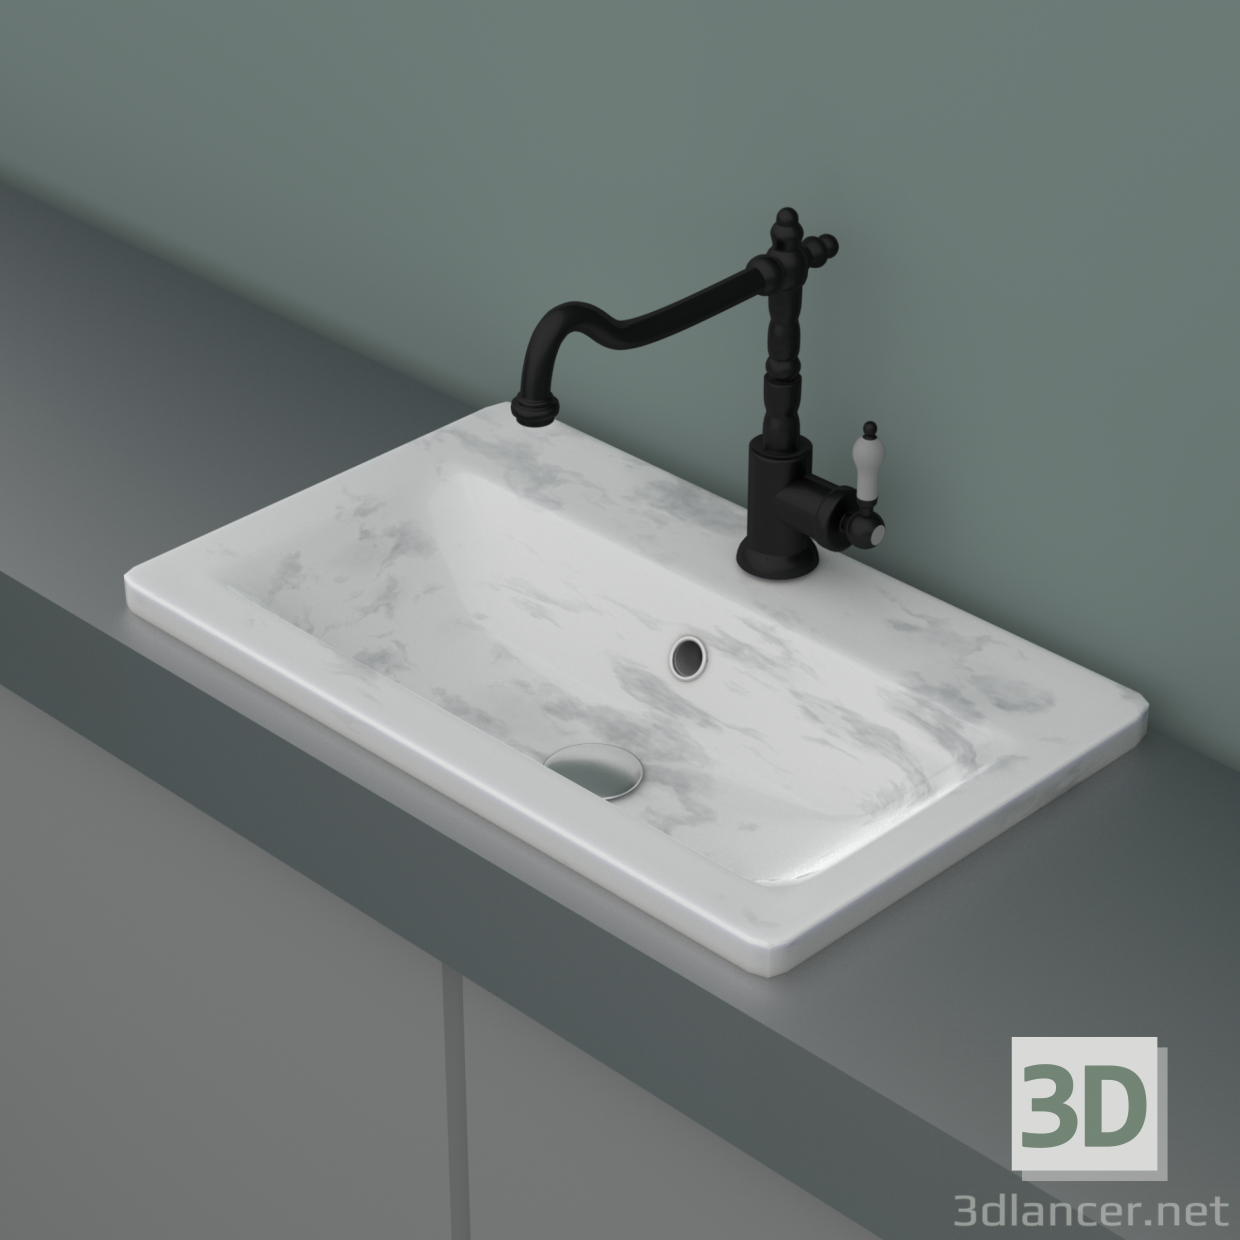 3D Musluk ve boru ile mermer lavabo modeli satın - render